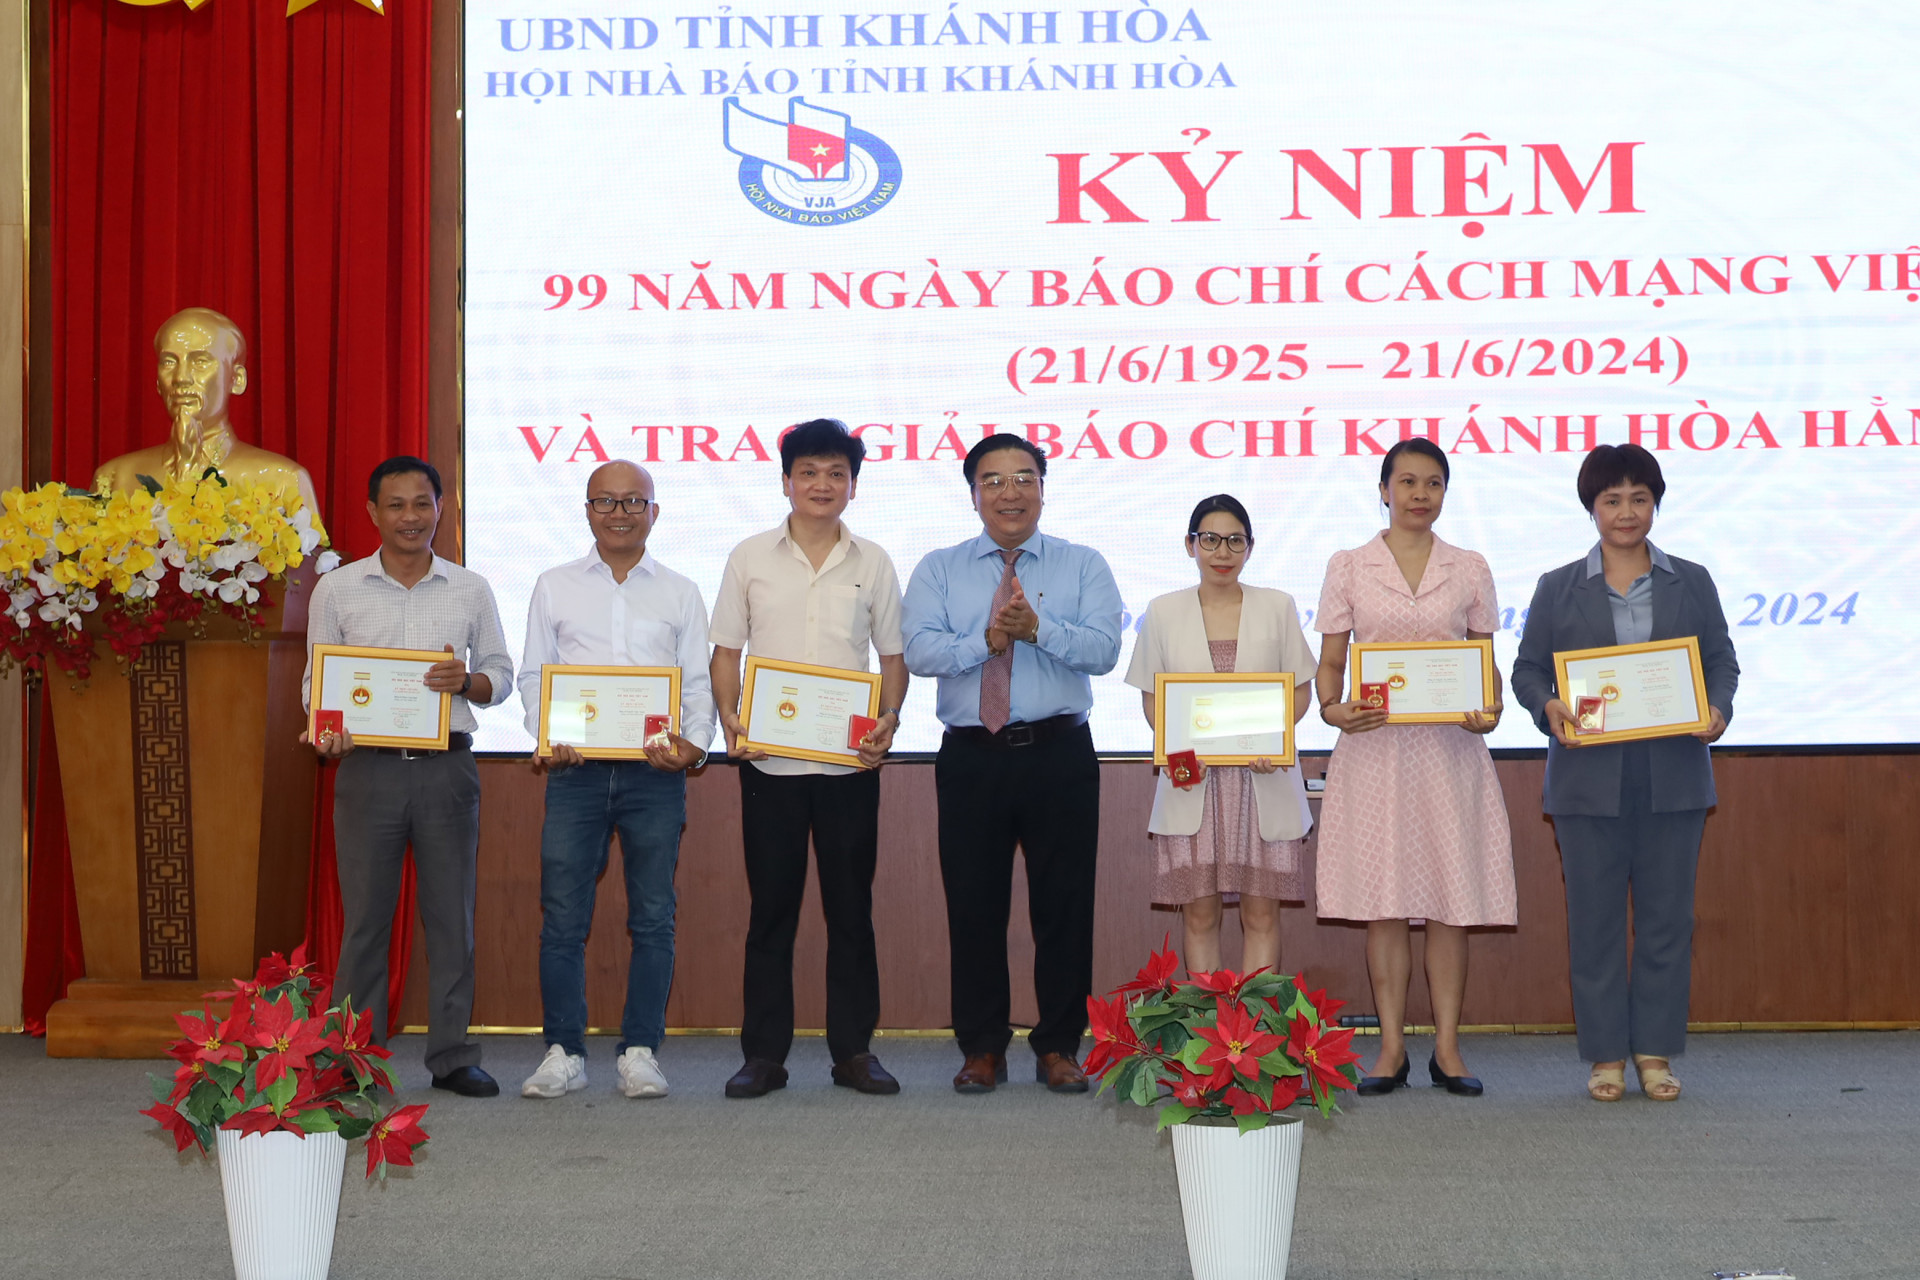 Lãnh đạo Hội Nhà báo tỉnh trao Kỷ niệm chương “Vì sự nghiệp báo chí Việt Nam” cho các hội viên.